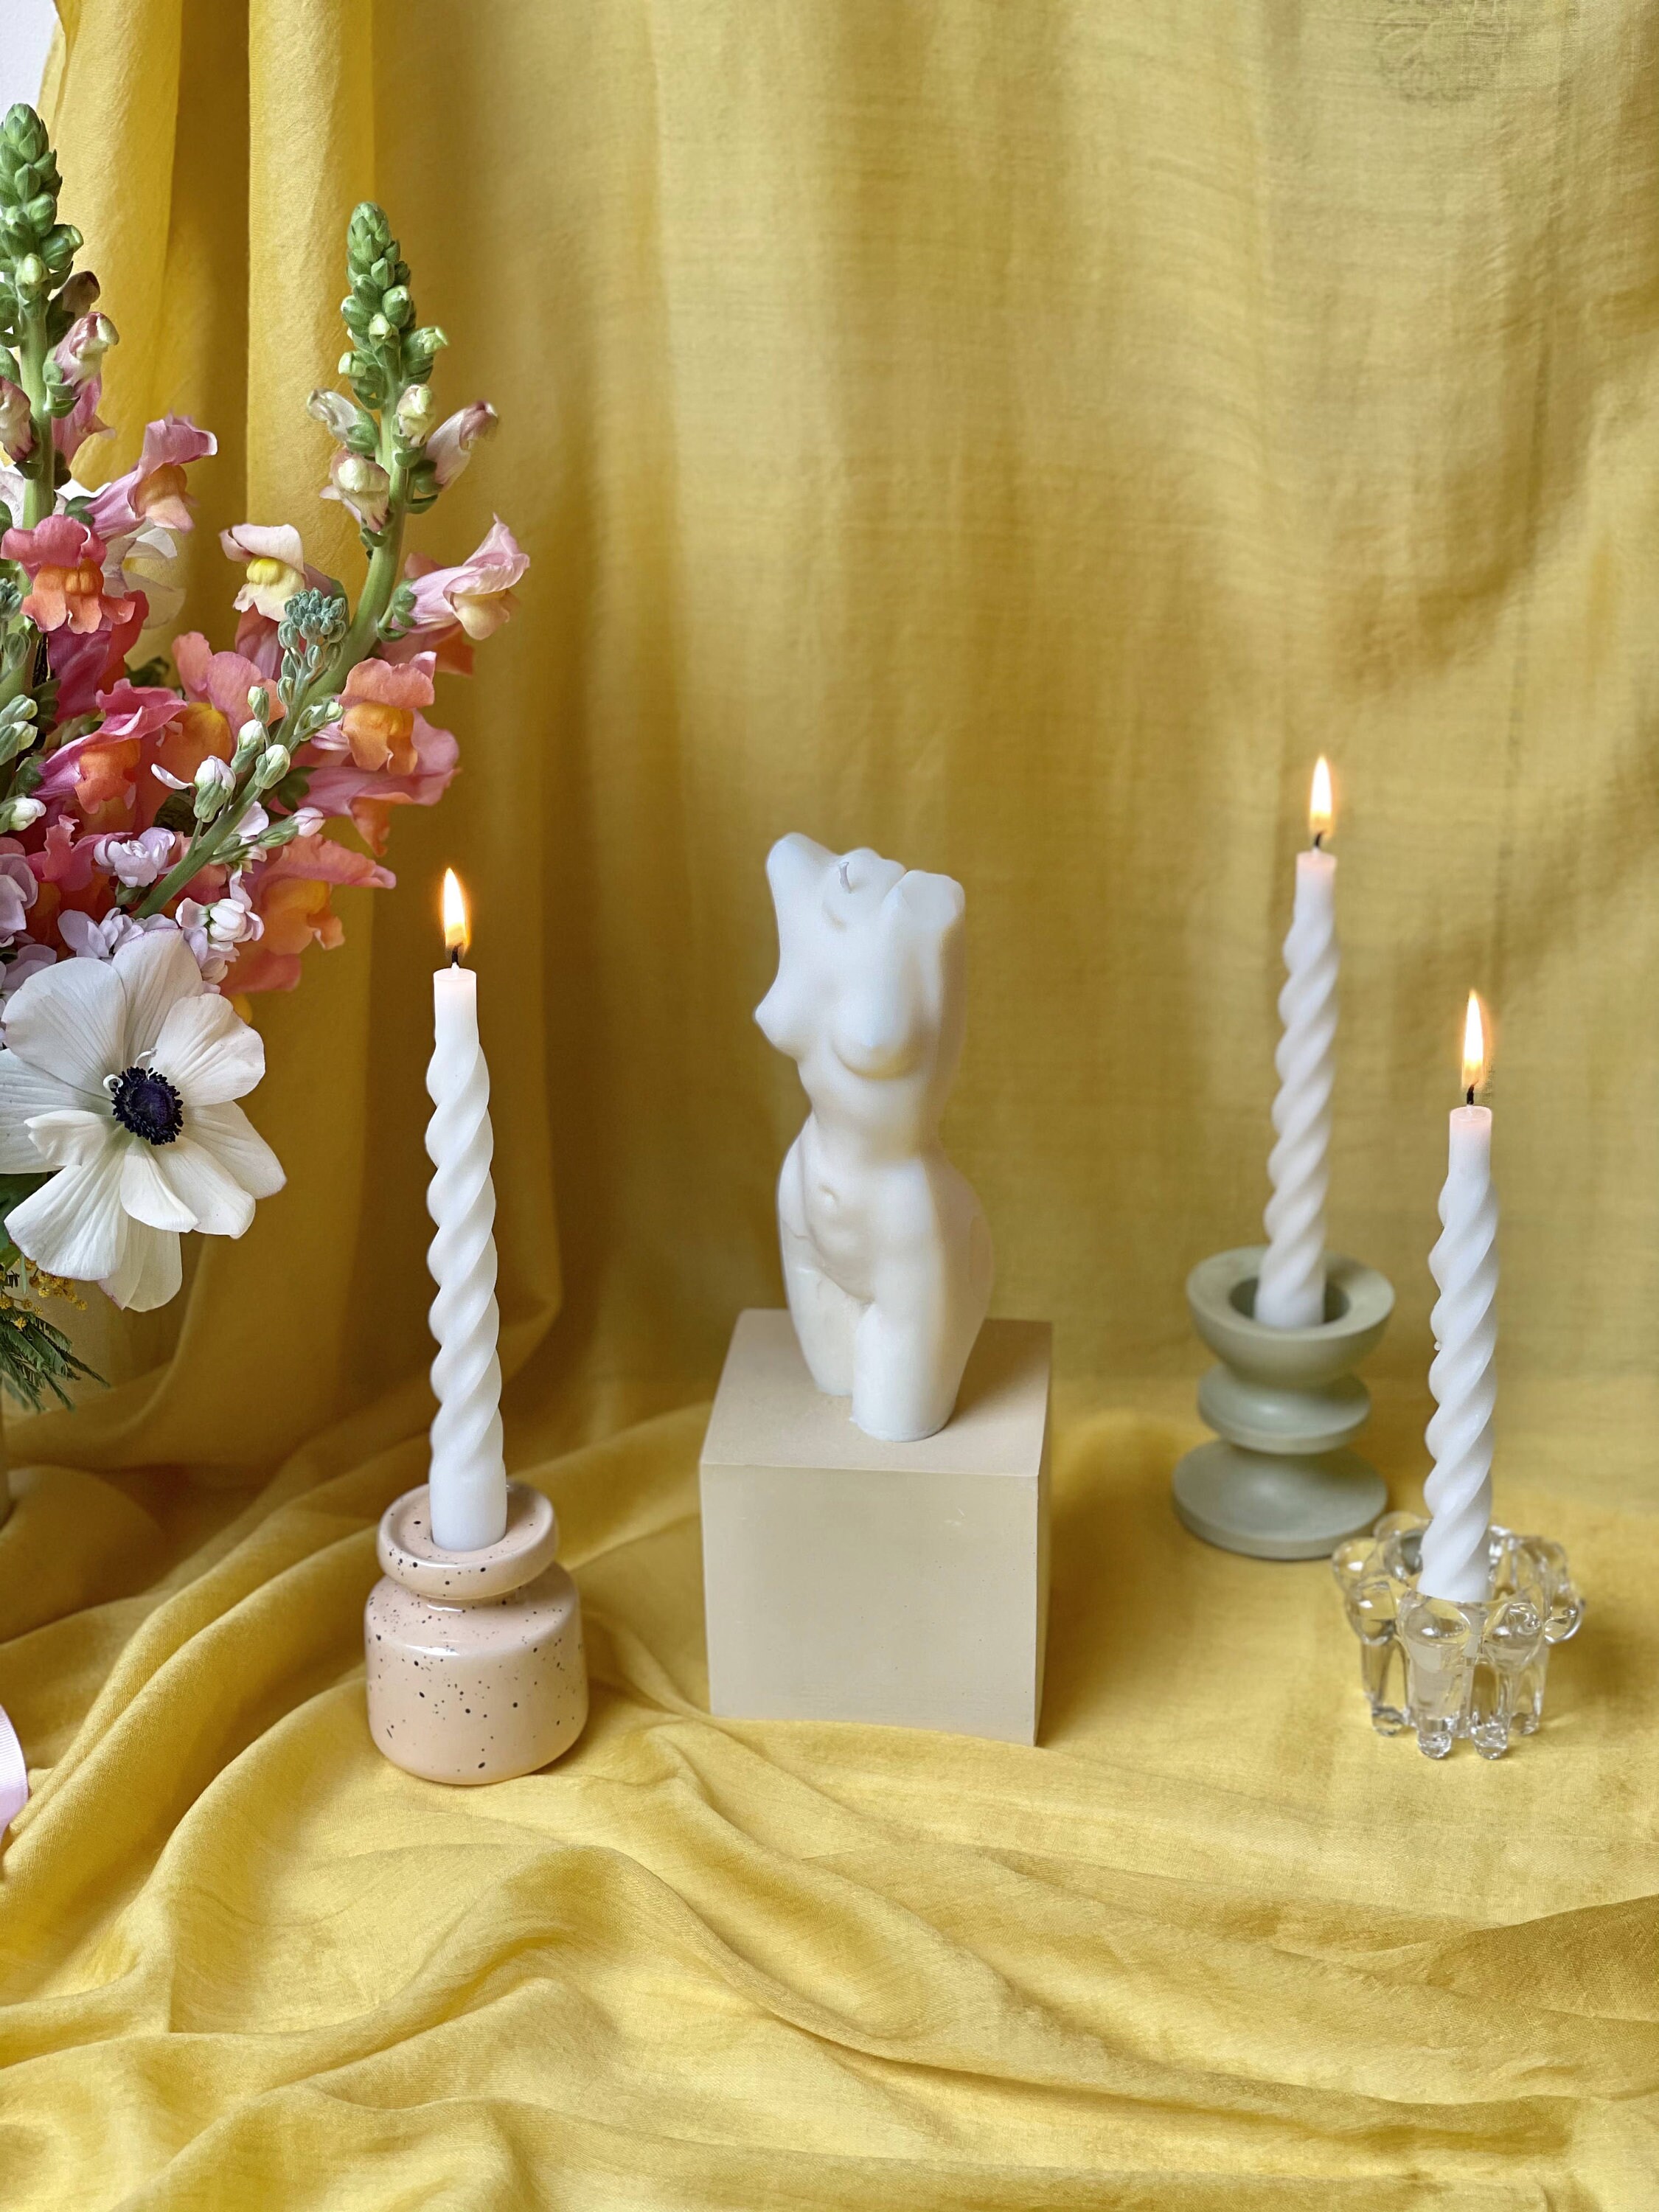 Conjunto de 3 velas espirales blancas / velas espirales no perfumadas / velas  blancas espirales / decoración de mesa navideña / velas espirales / velas  cónicas -  España